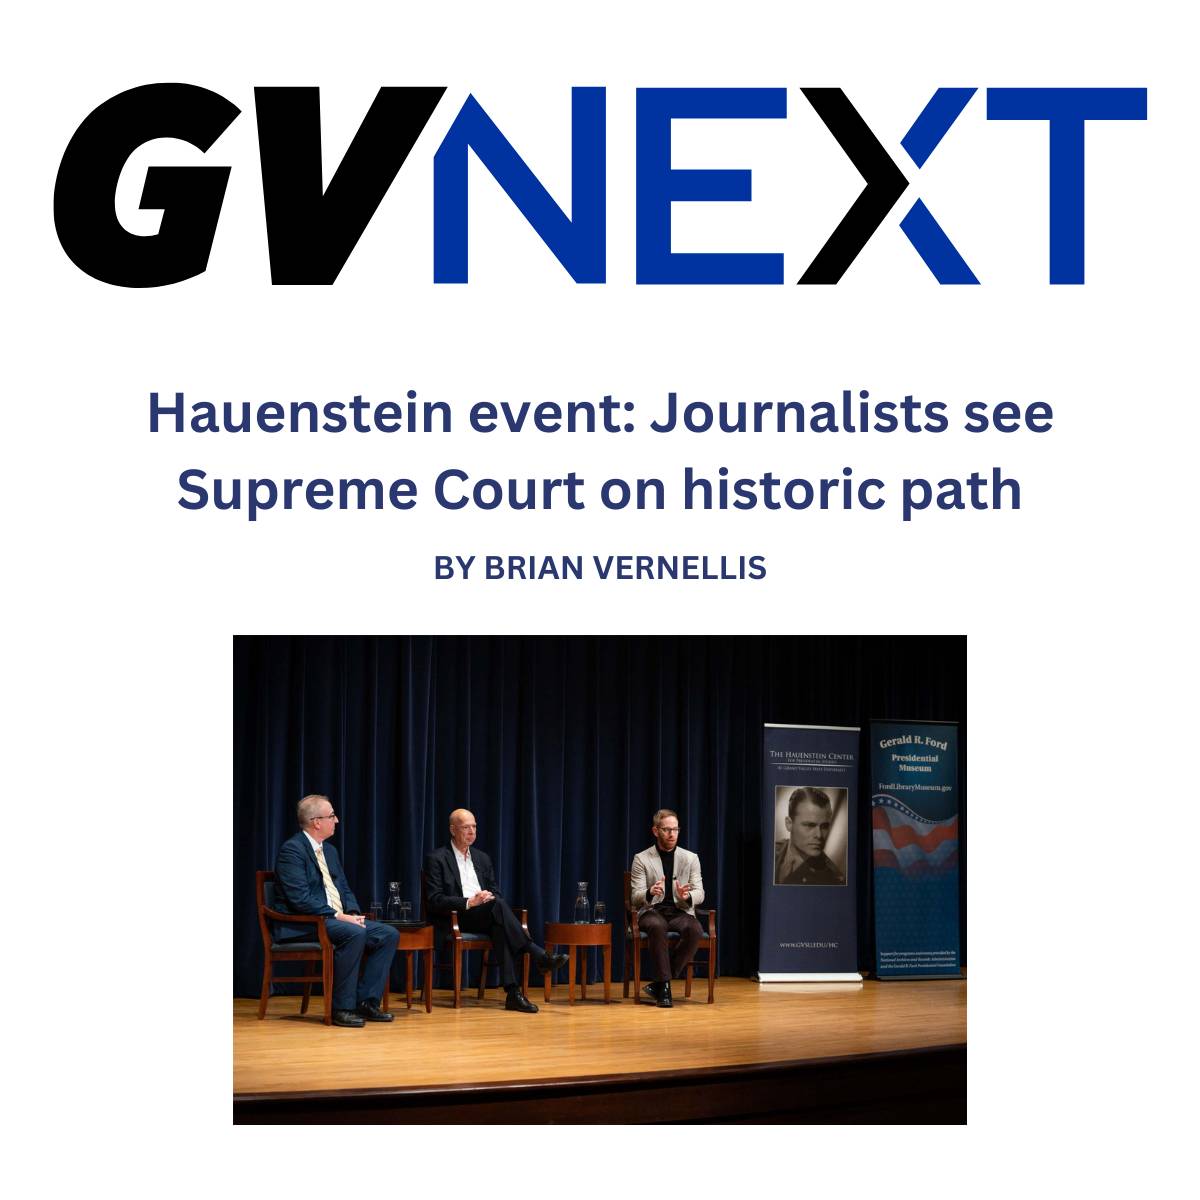 Hauenstein event: Journalists see Supreme Court on historic path